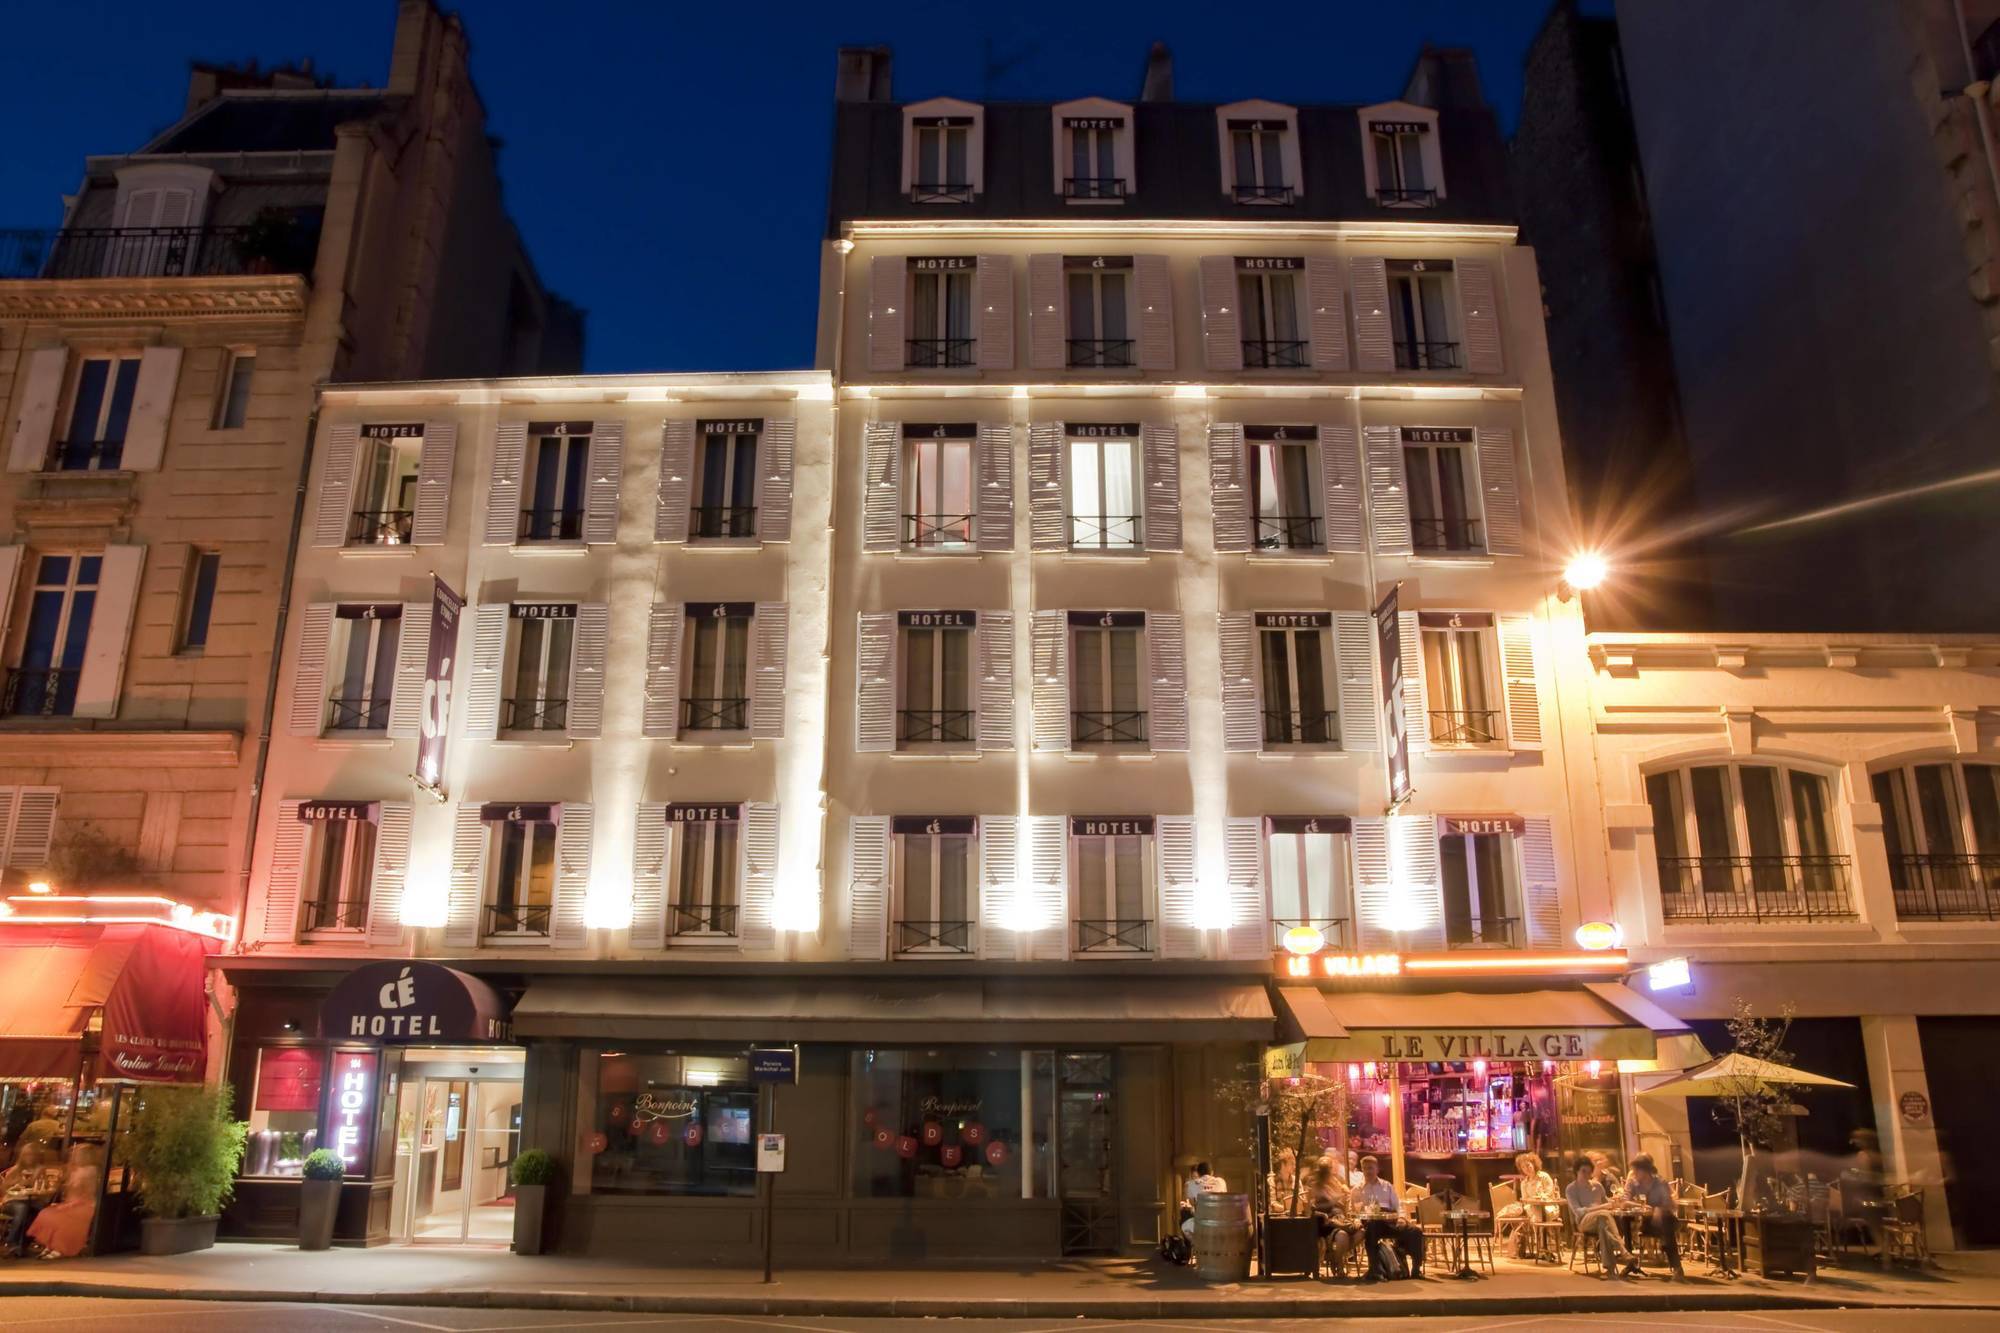 Courcelles Etoile Hotel Paris Exterior photo